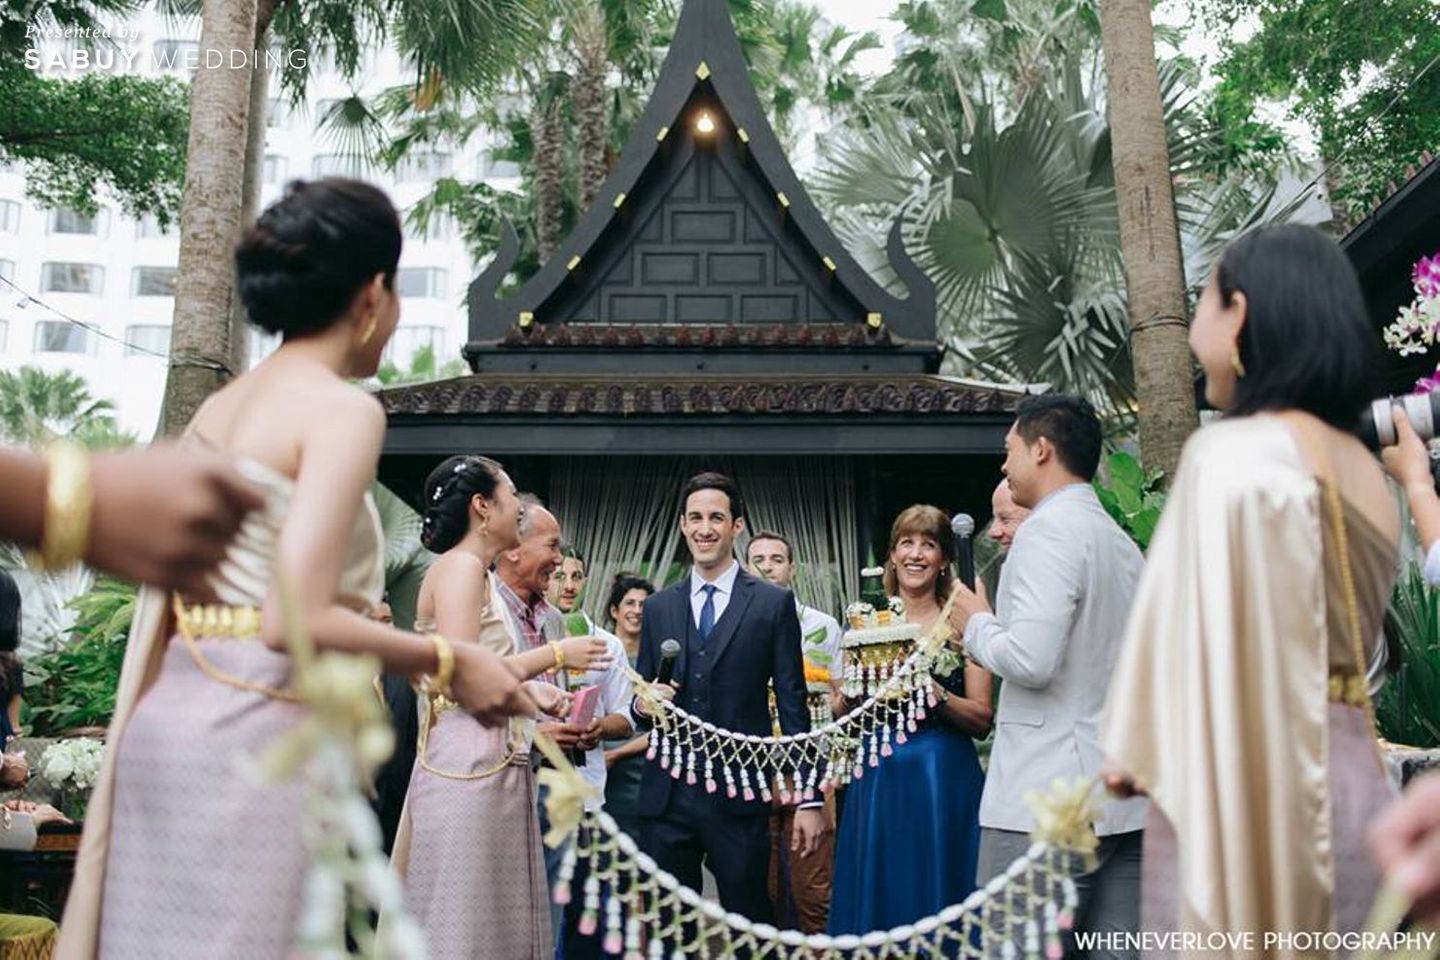 งานหมั้น,พิธีหมั้น,พิธีแต่งงาน,พิธีแต่งงานแบบไทย,แห่ขันหมาก,เจ้าบ่าว,เพื่อนเจ้าสาว,สถานที่แต่งงาน,สถานที่จัดงานแต่งงาน,Wheneverlove Photography,Shangri-La Hotel,Bangkok งานหมั้นพิธีไทย โดนใจฝรั่ง Photo by Wheneverlove Photography